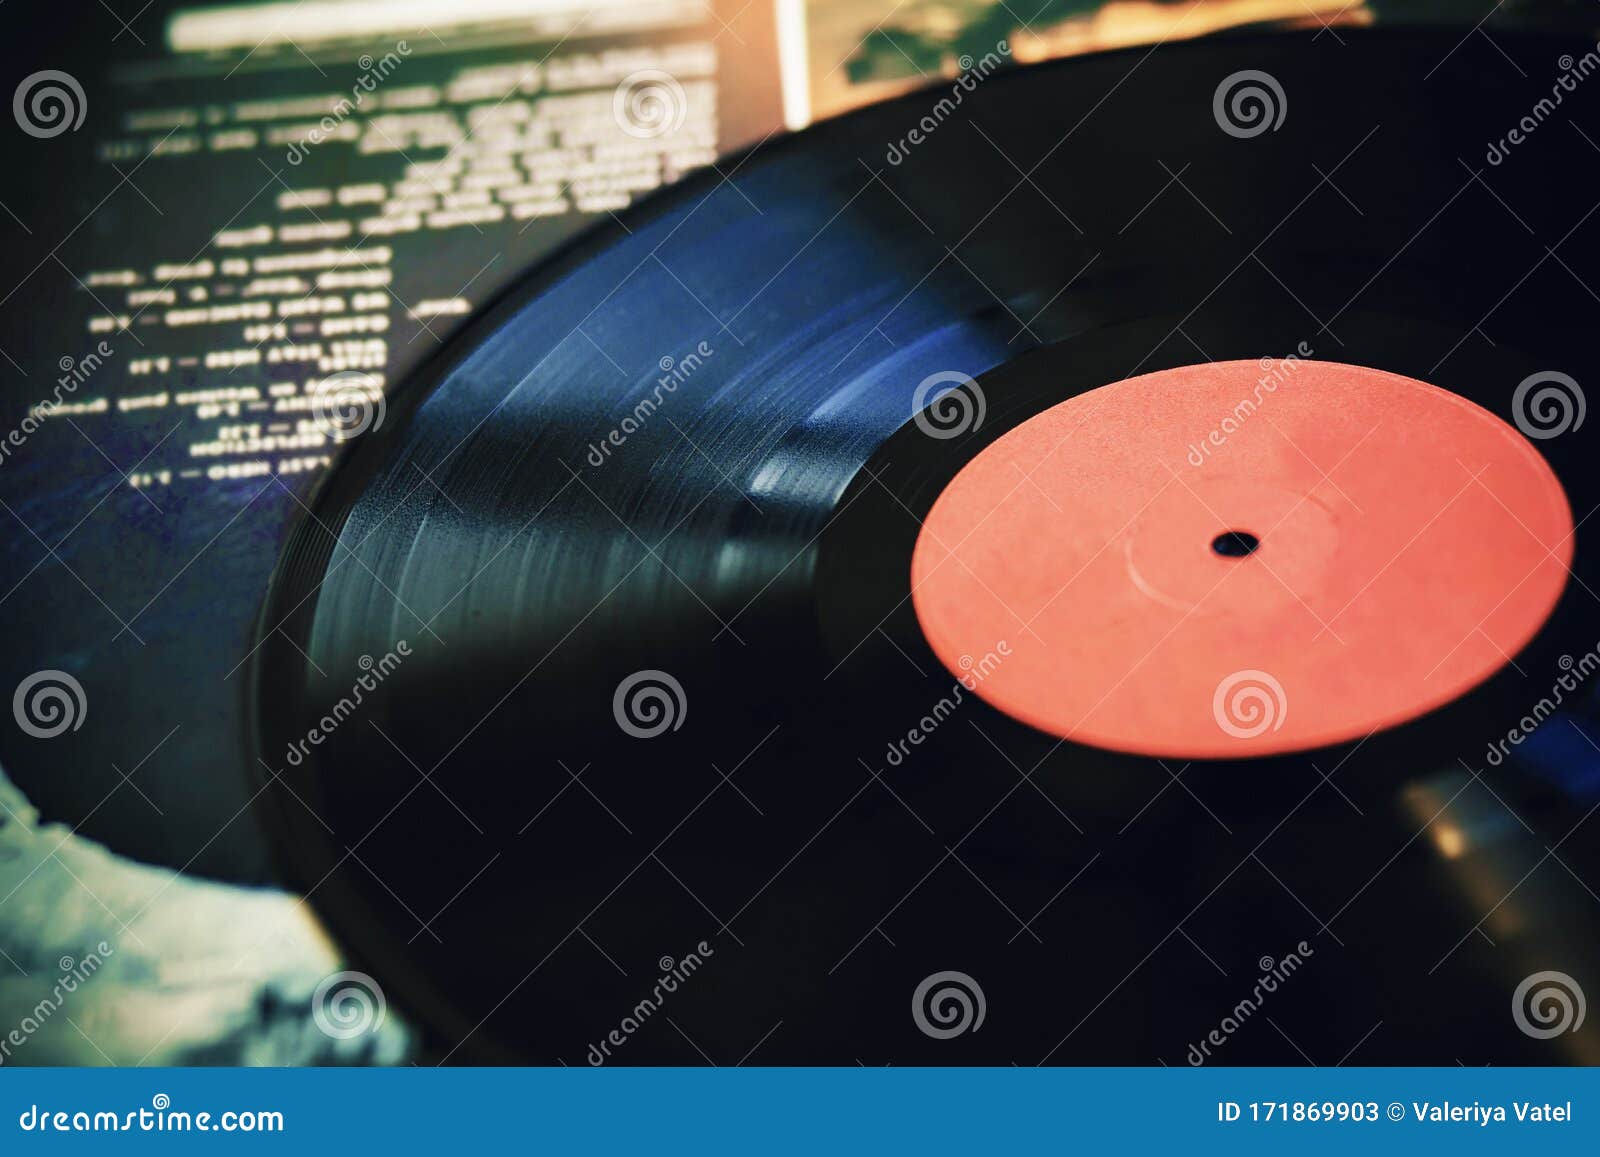 Un Disco De Vinilo Negro Vintage Se Encuentra En La Portada De Un álbum De  Música Imagen de archivo - Imagen de escuchar, negro: 171869903